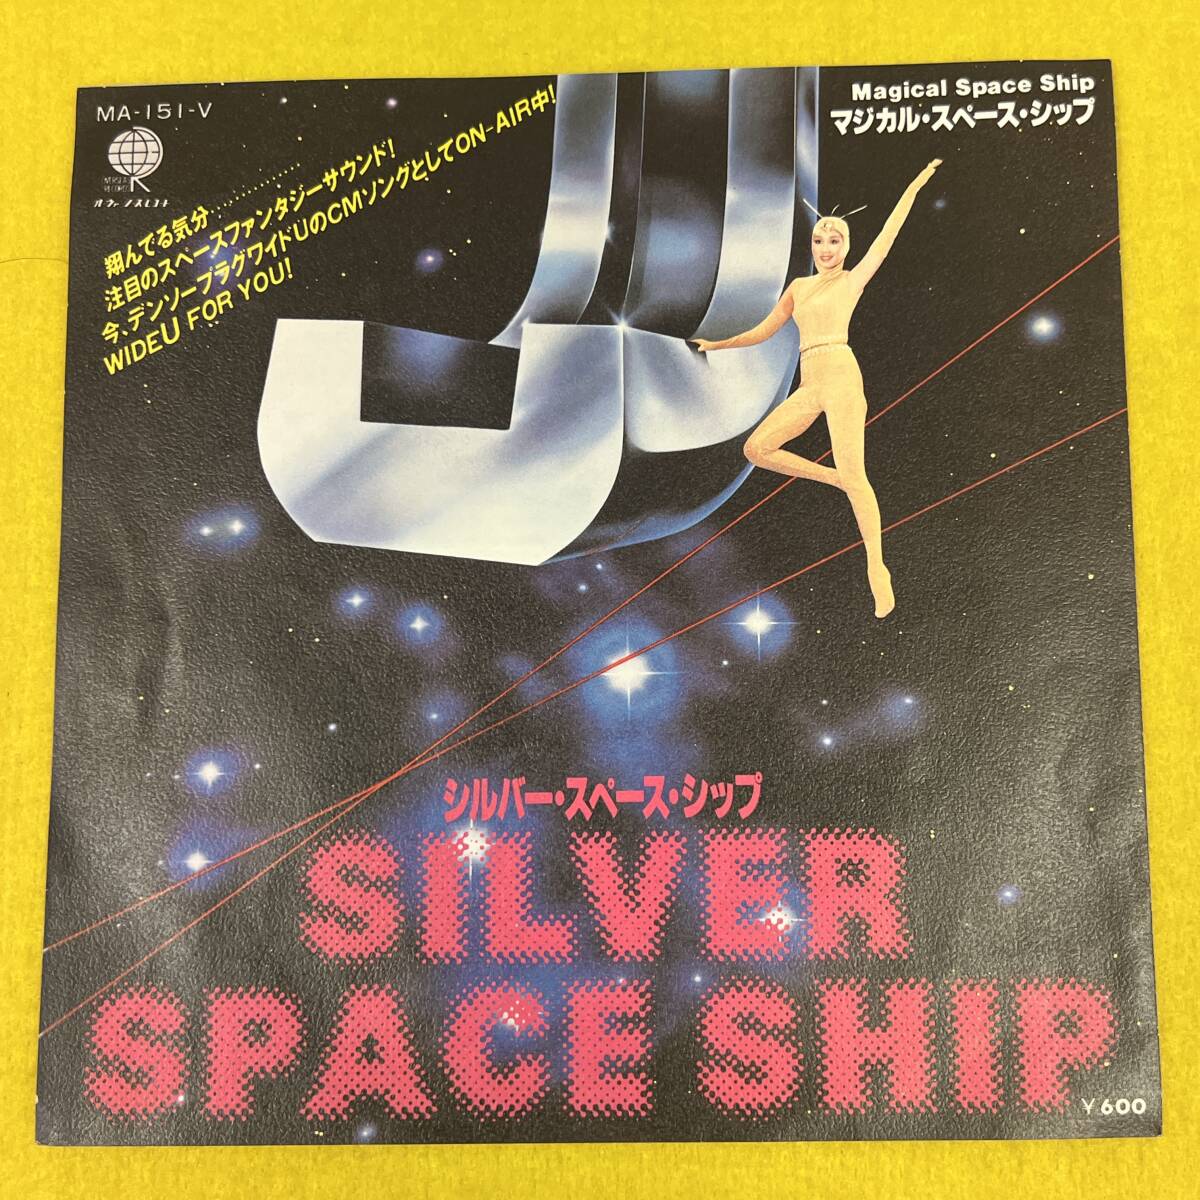 【Silver Space Ship★シルバー・スペース・シップ】SUPERMAN/スーパーマン★7インチ ep シングル レコード_画像2